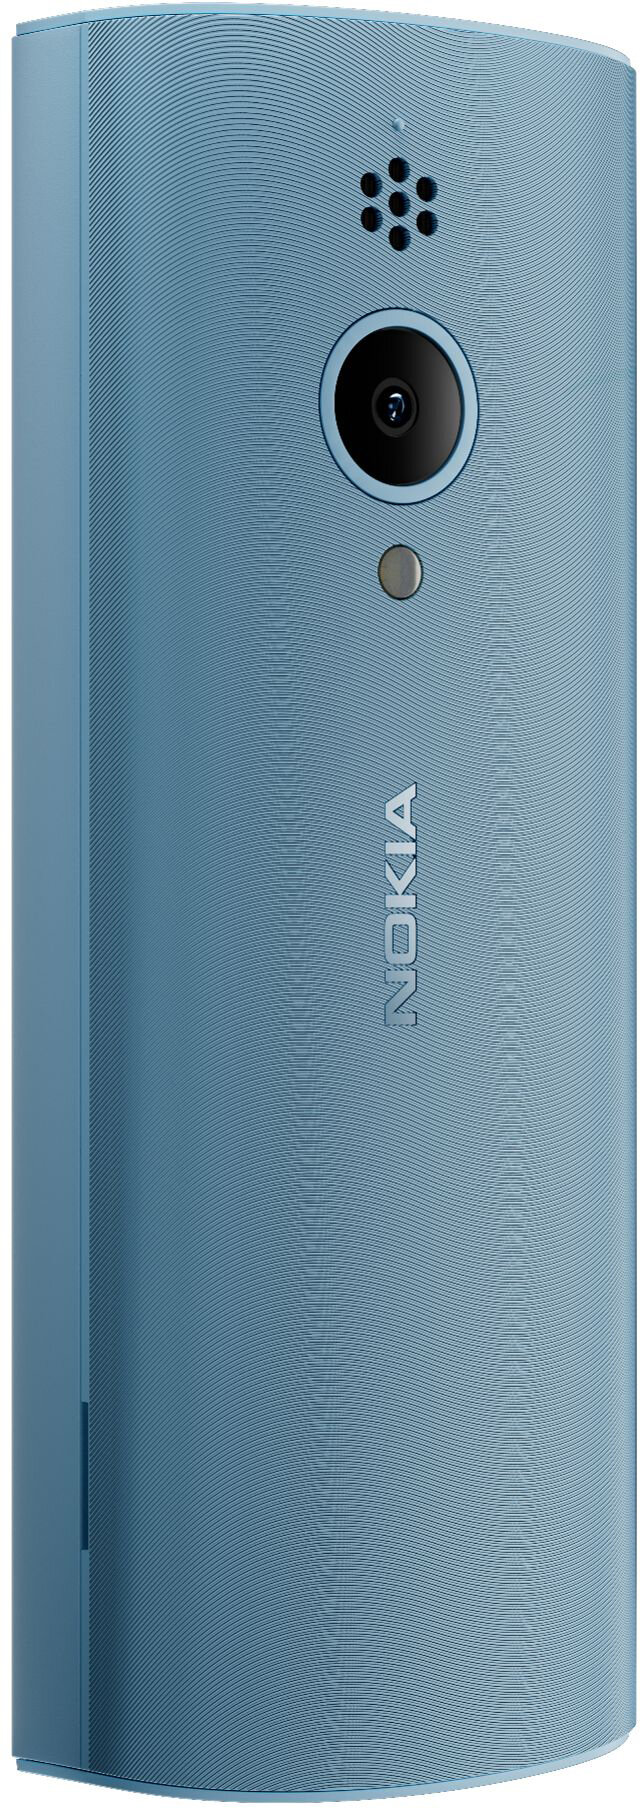 Мобильный телефон Nokia - фото №6